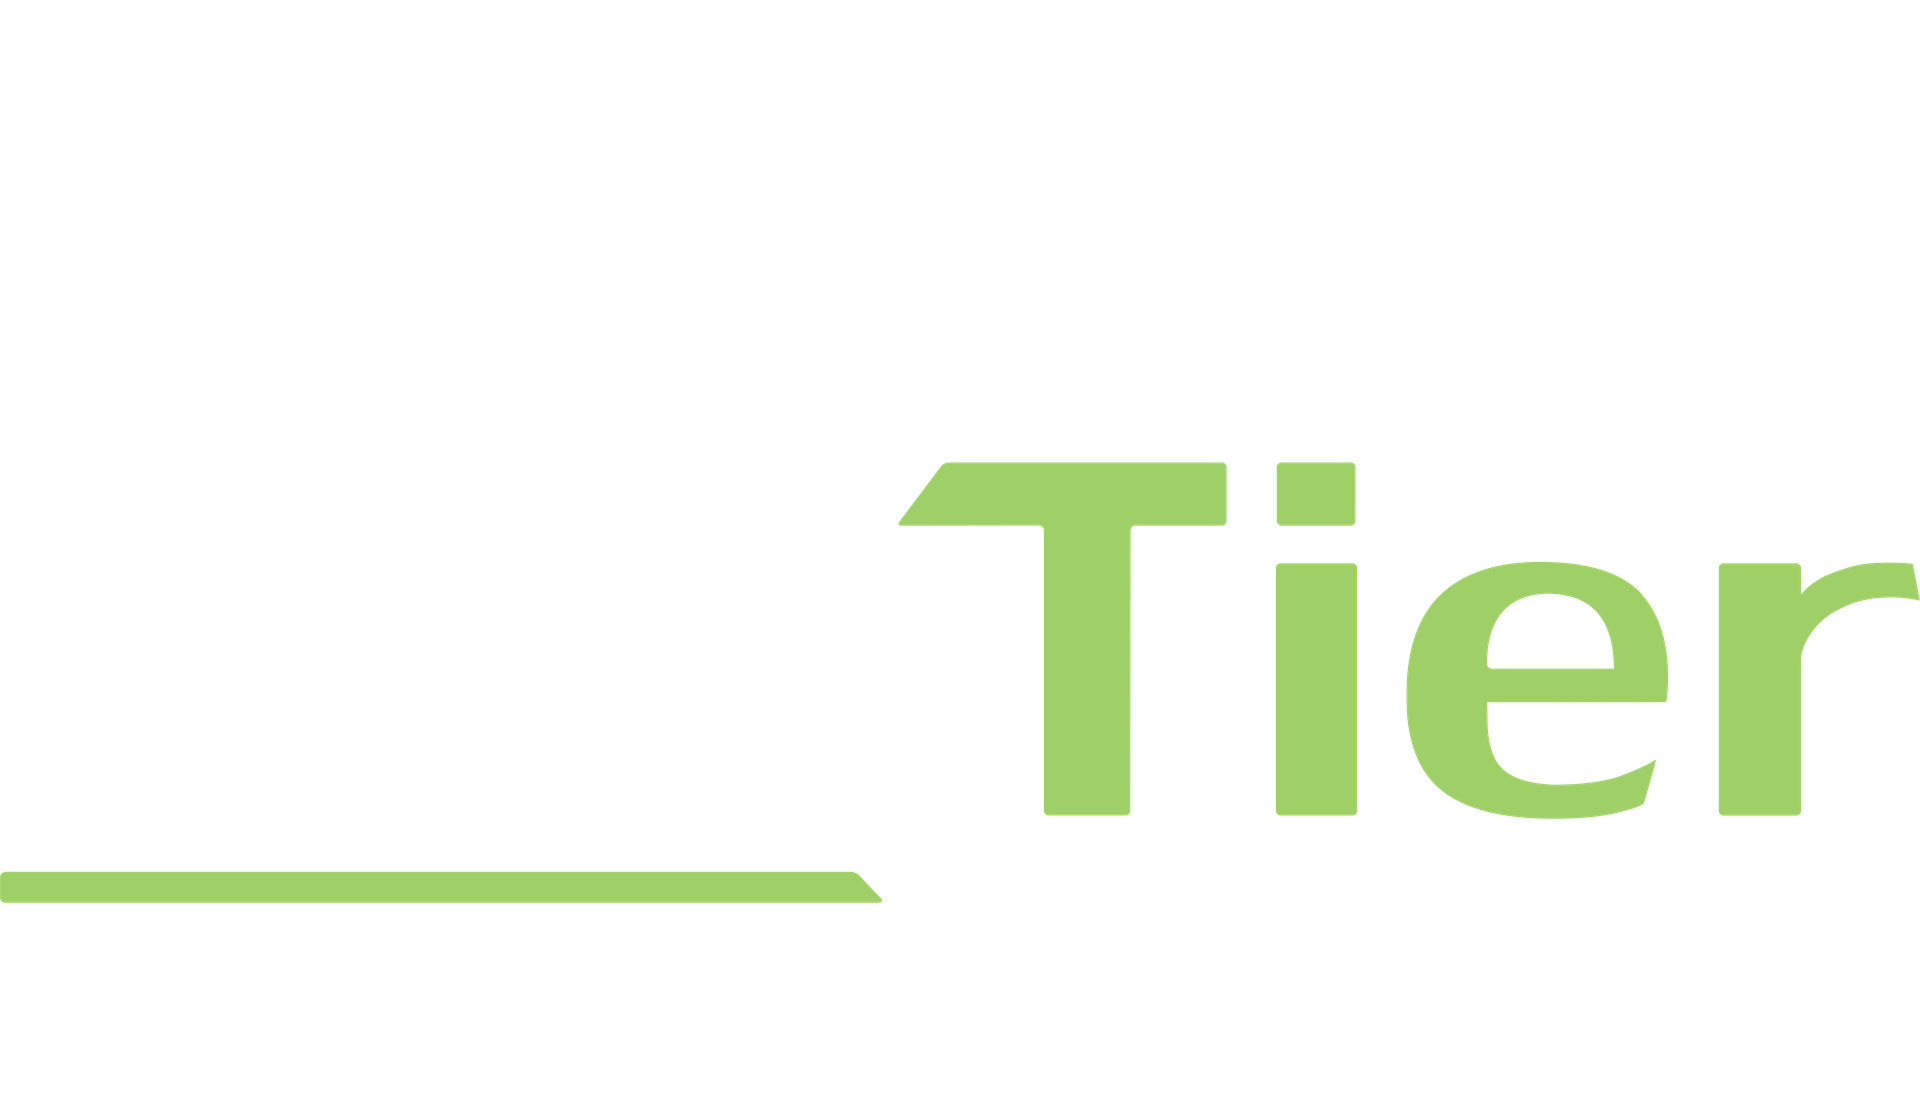 NexTier Wealth Management logo